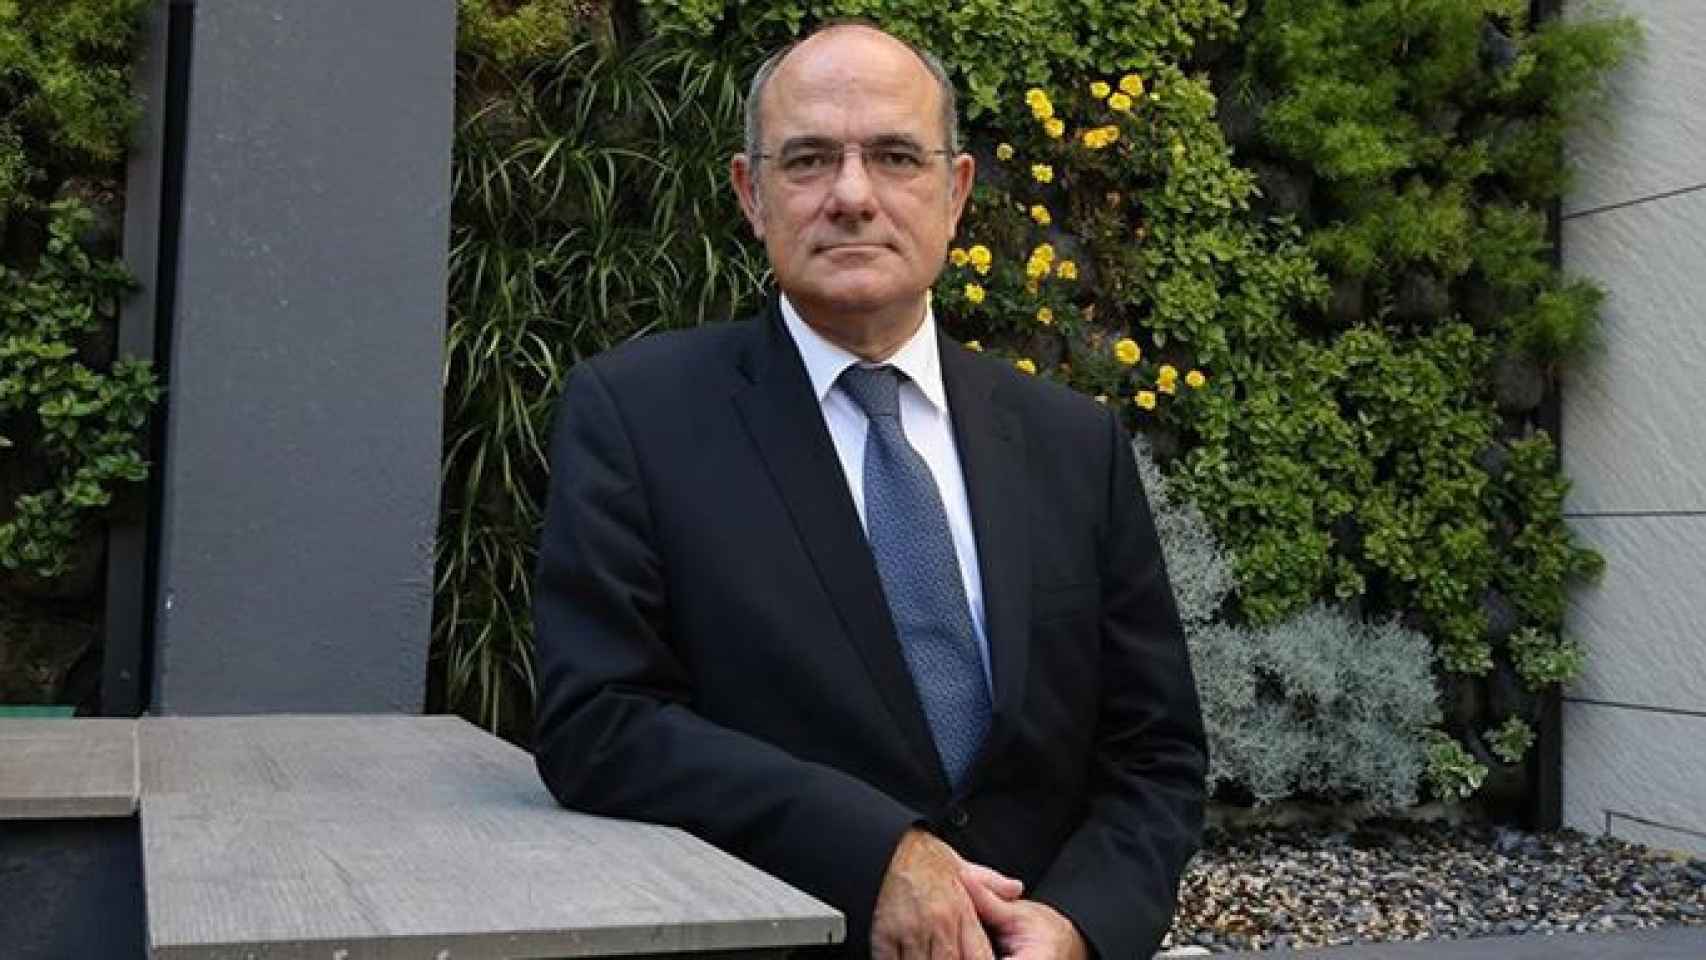 El portavoz del Parlamento europeo Jaume Duch / CG